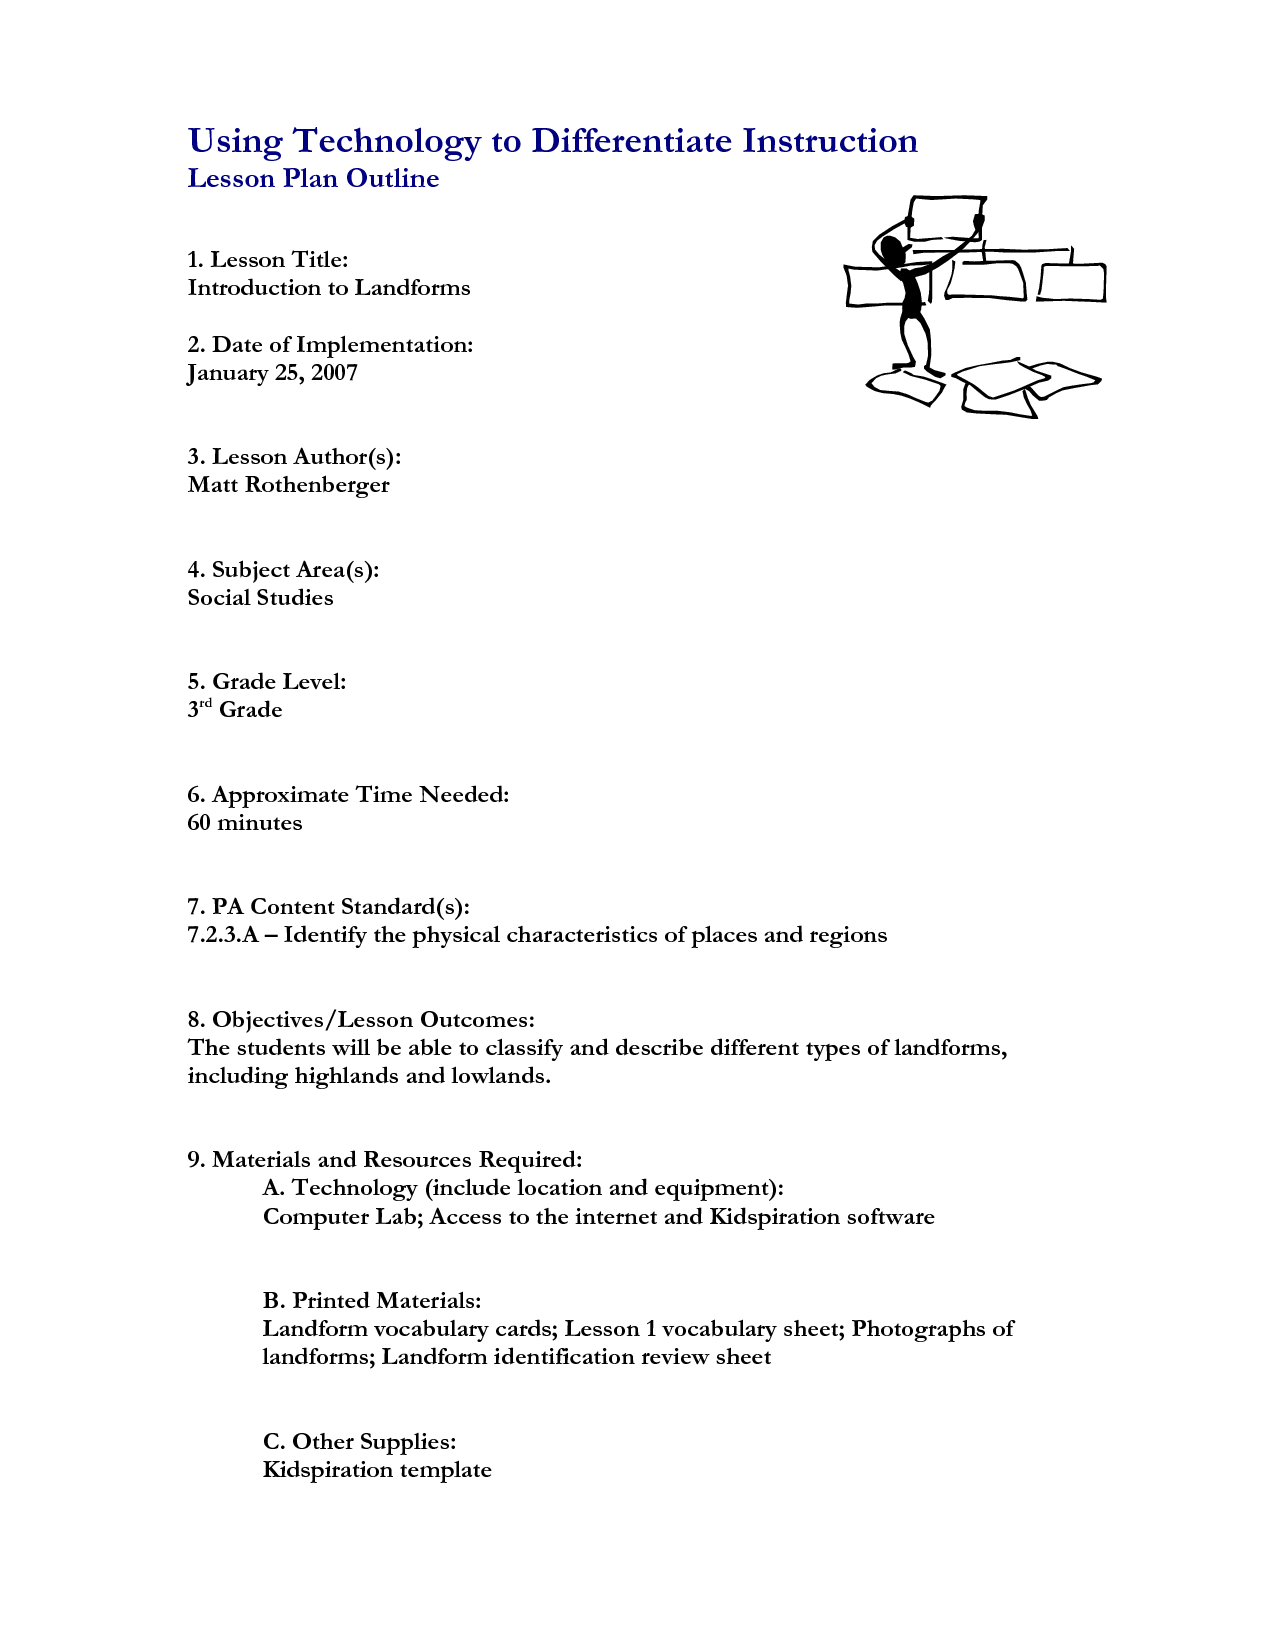 Social Studies Landform Worksheets Image